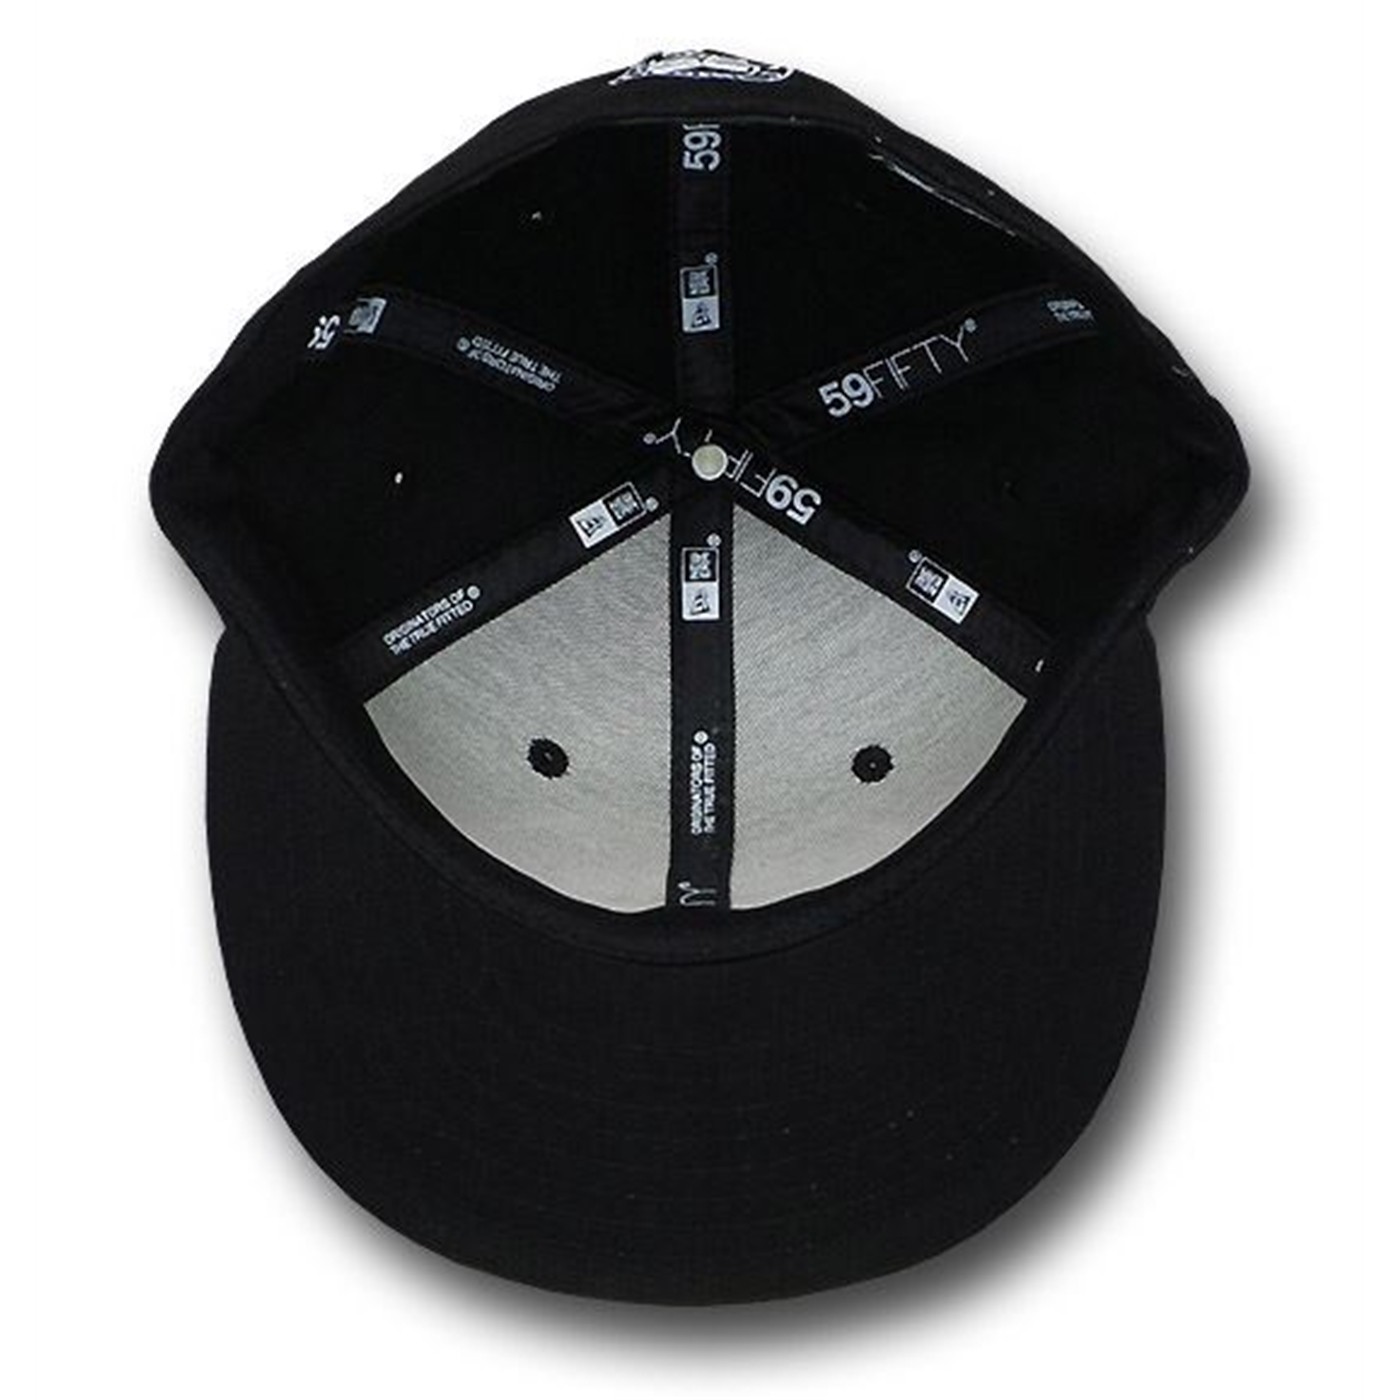 Batman 59Fifty Black Symbol Flat Bill Hat